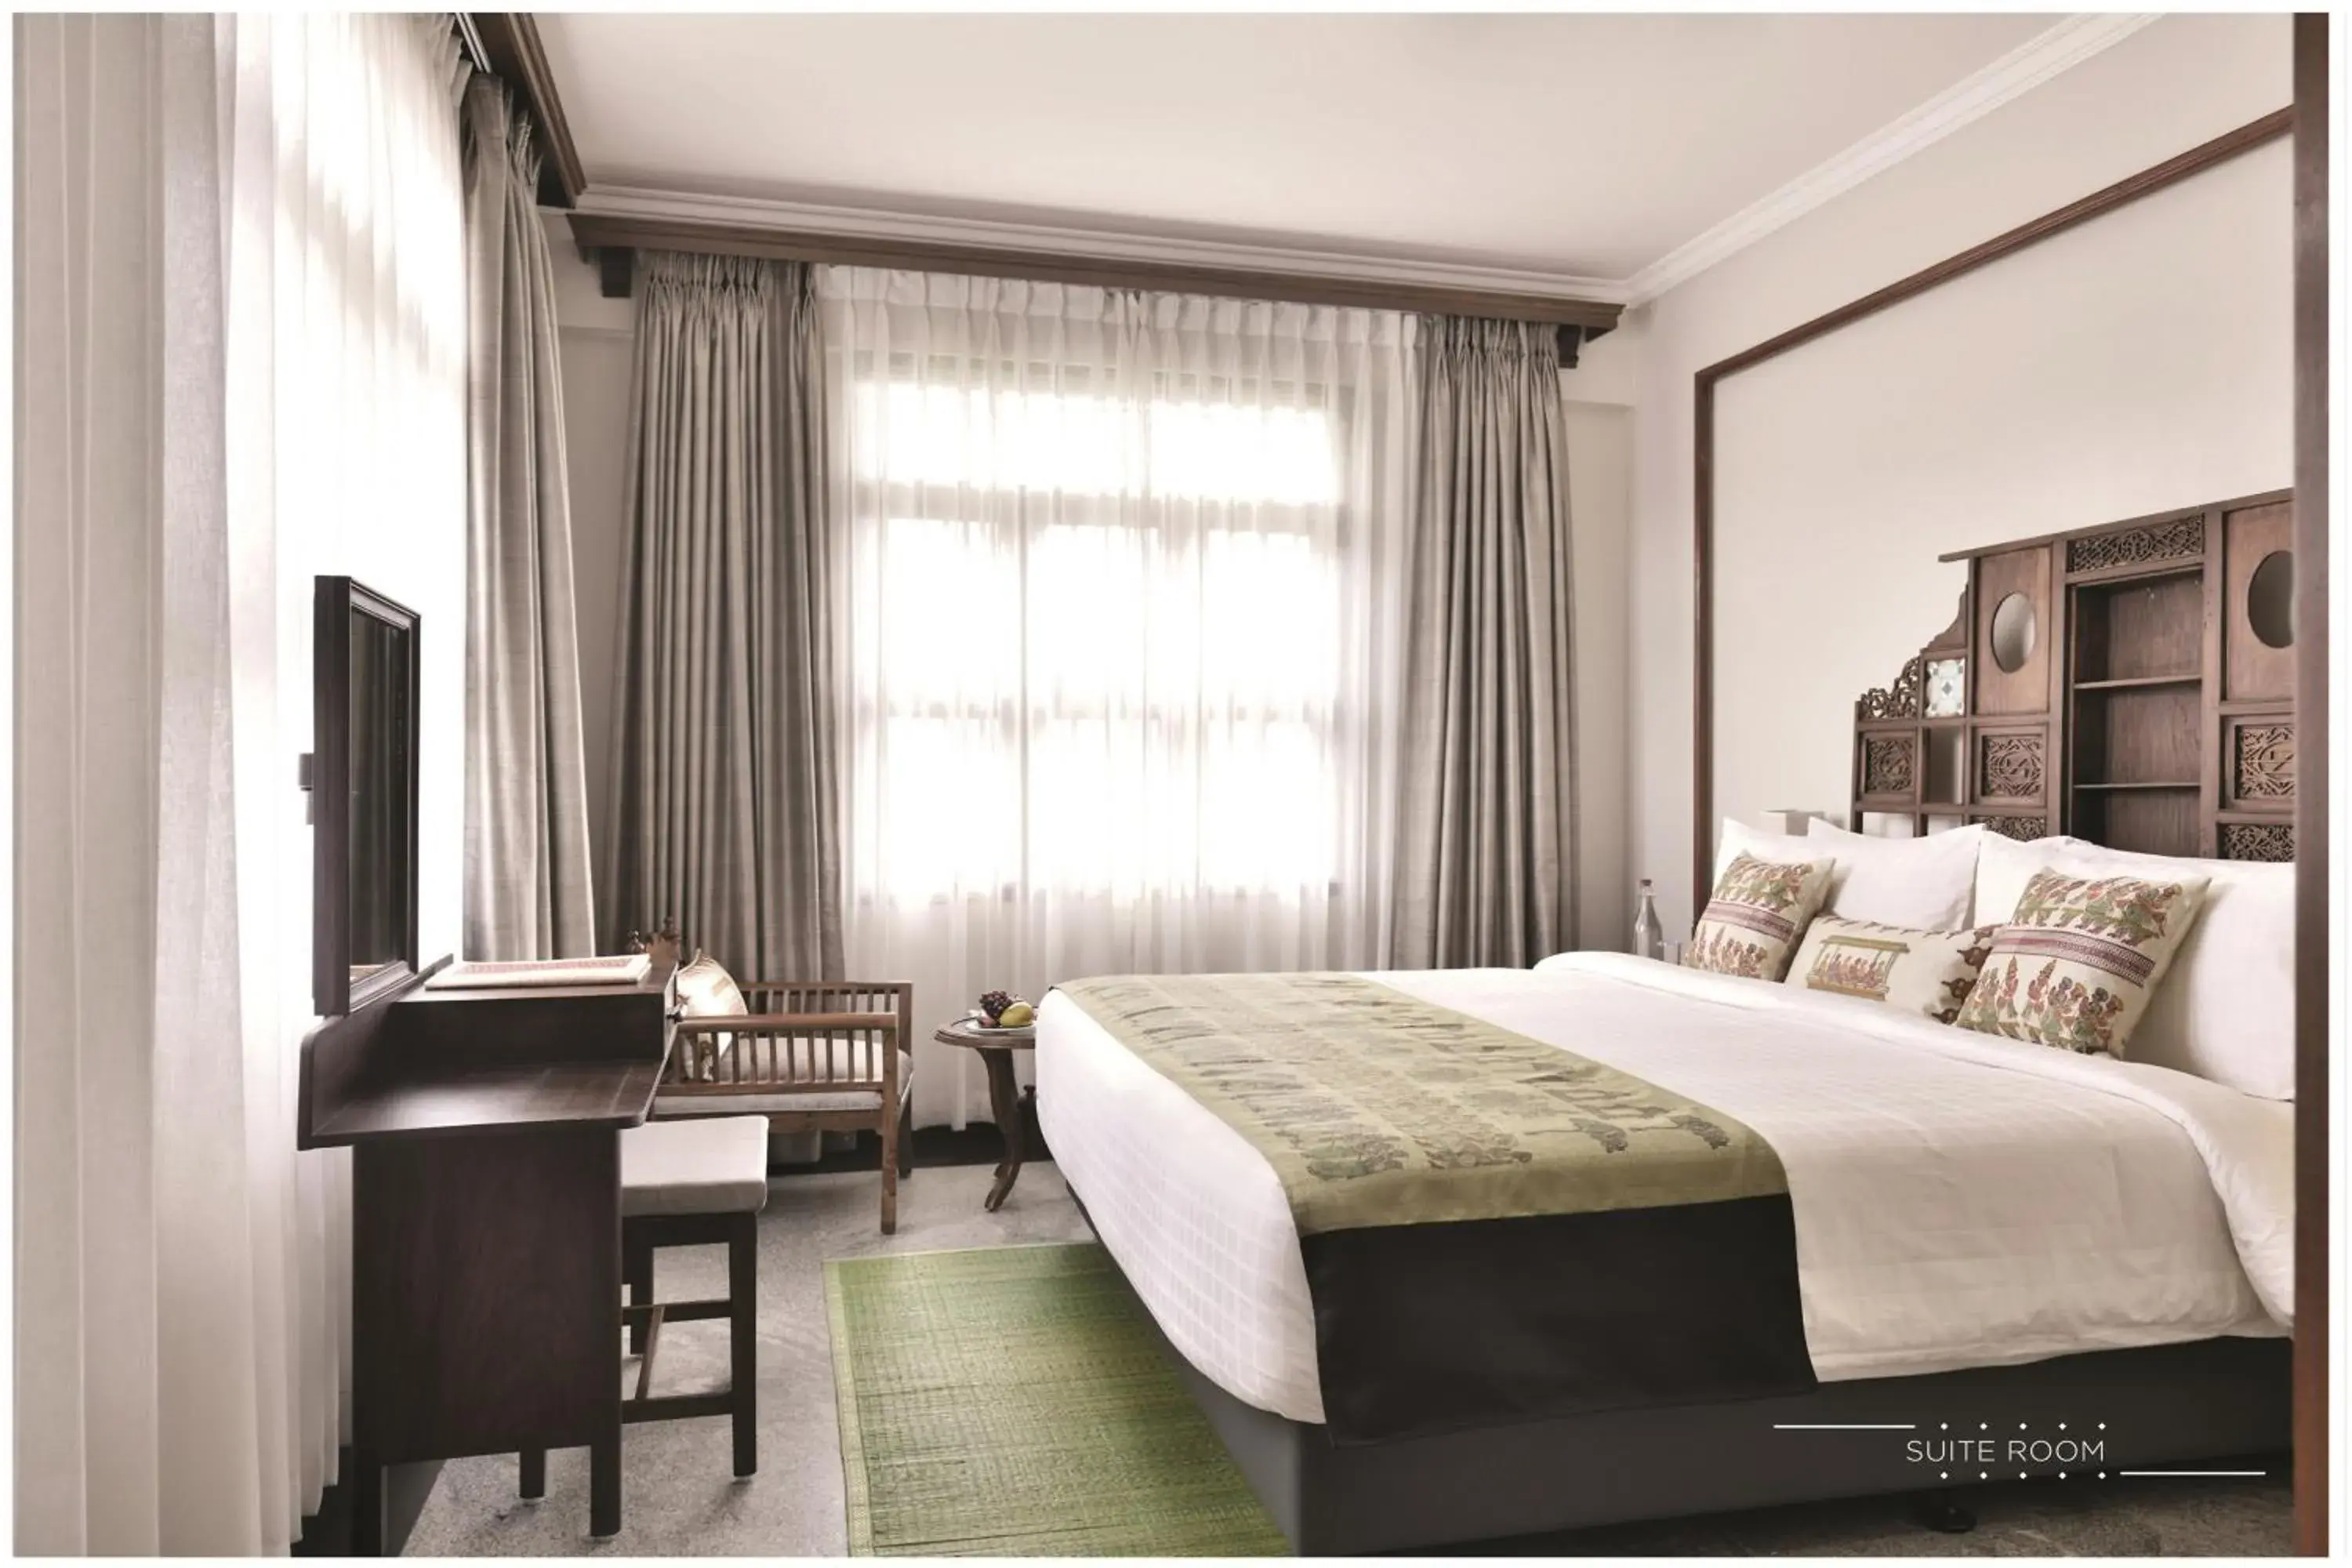 Bed in Svatma Heritage Hotel